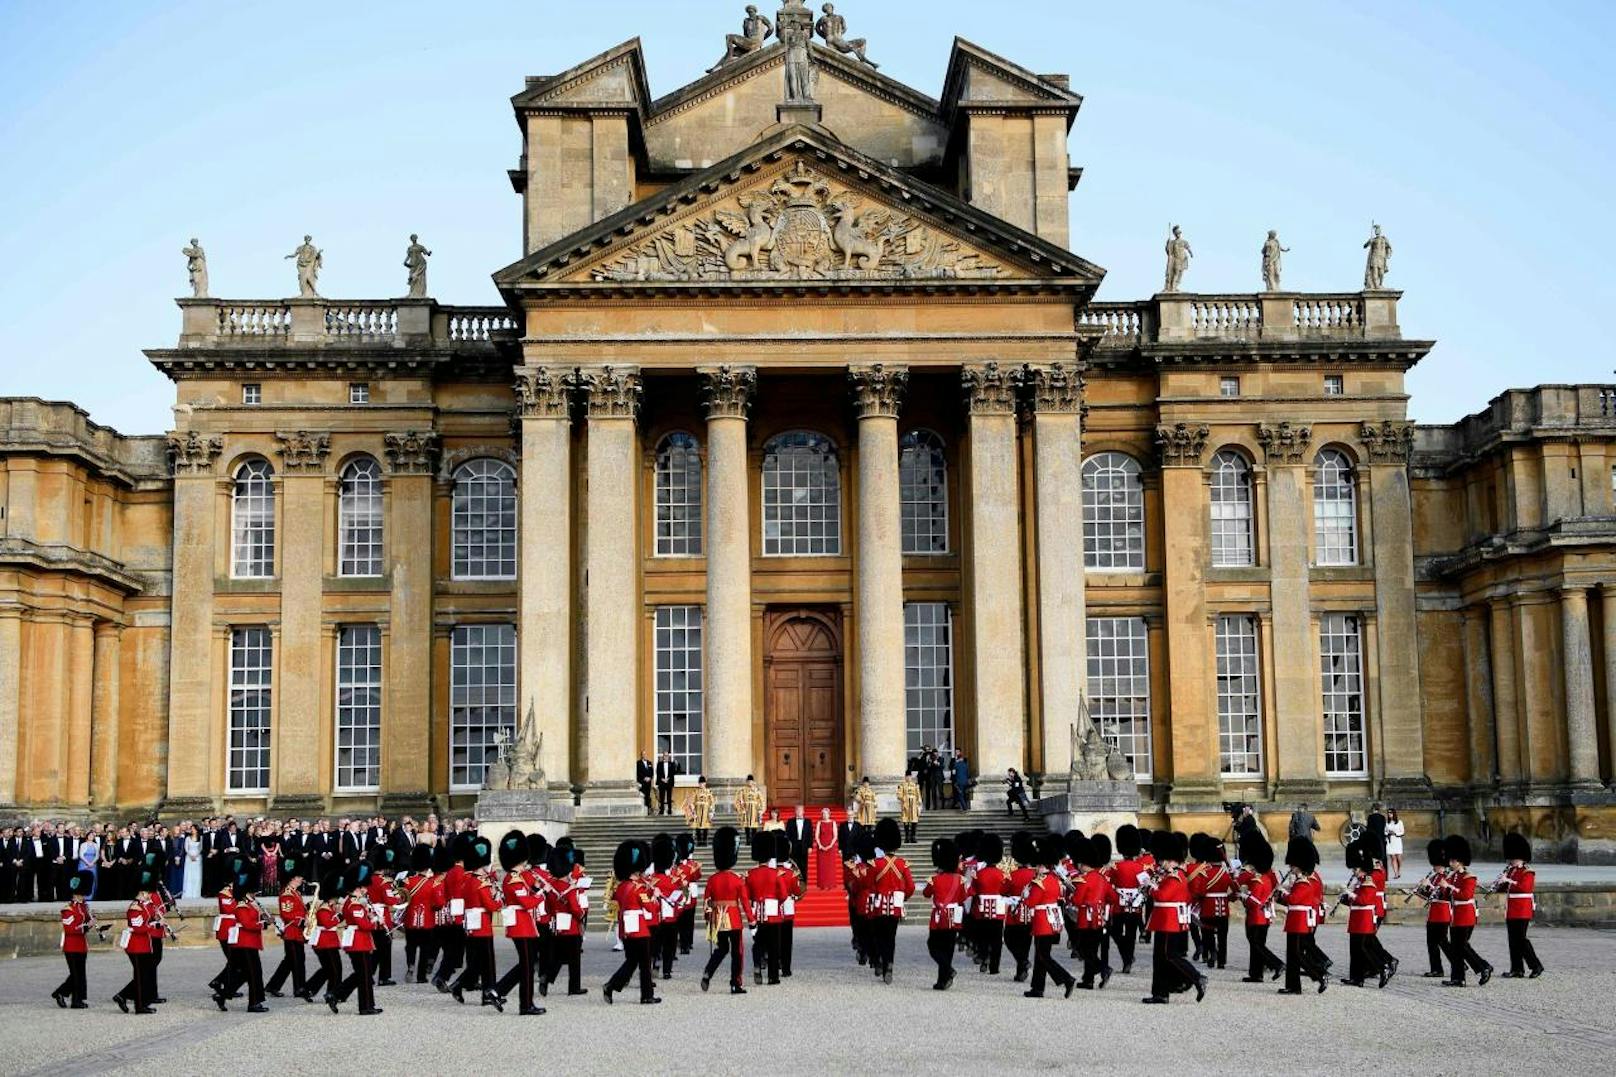 First <b>Lady Melania</b> und US-Präsident <b>Donald Trump</b> wurden von Premierministerin <b>Theresa May</b> und ihrem Gatten <b>Philip May</b> auf den Stufen von Blenheim Palace, dem Geburtsort von Winston Churchill zum Staatsdinner empfangen (12. Juli 2018).